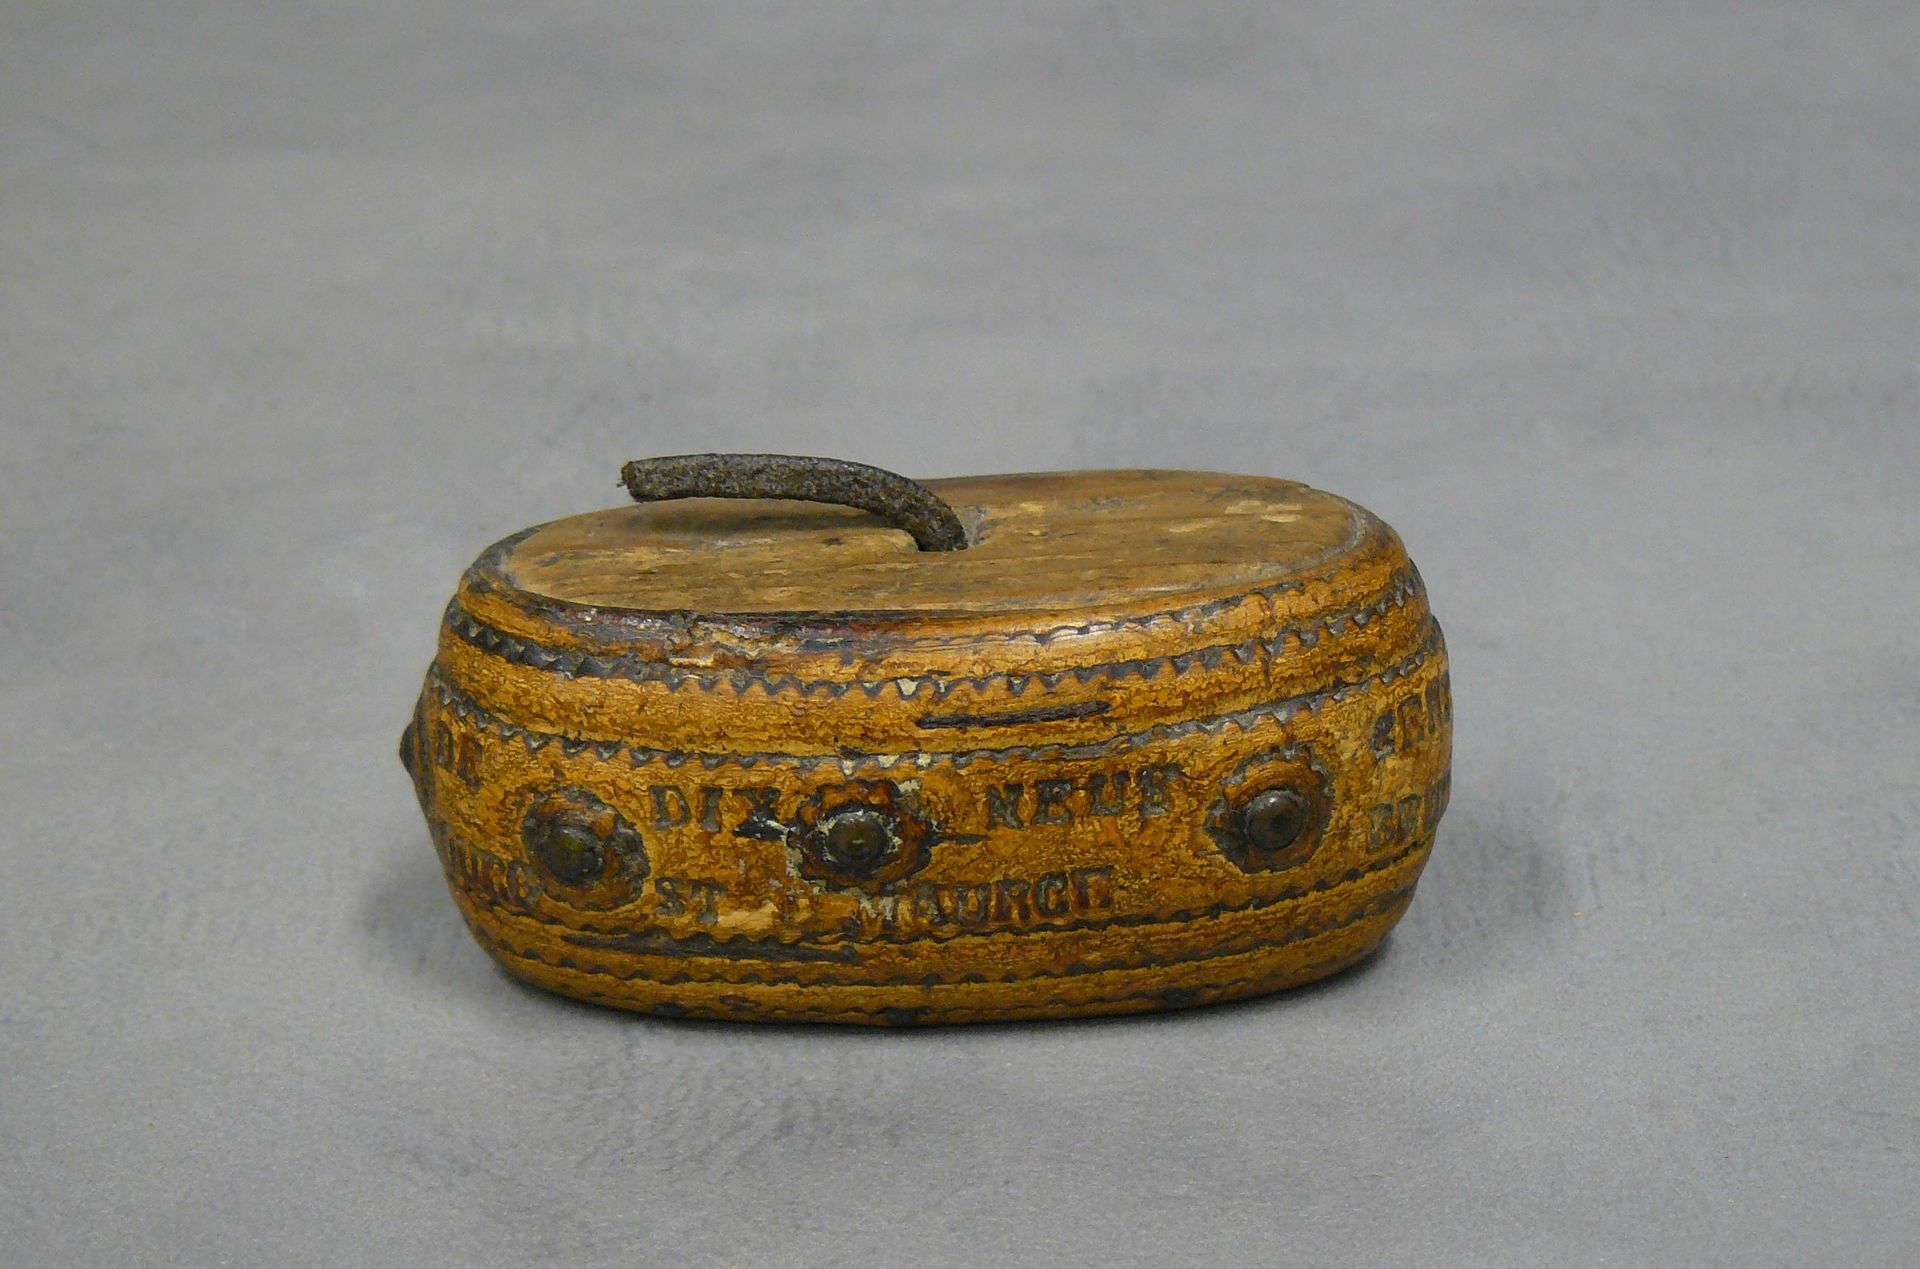 Brunod Joconde Schnupftabakdose aus Holz, graviert, datiert und bezeichnet: Souv&hellip;